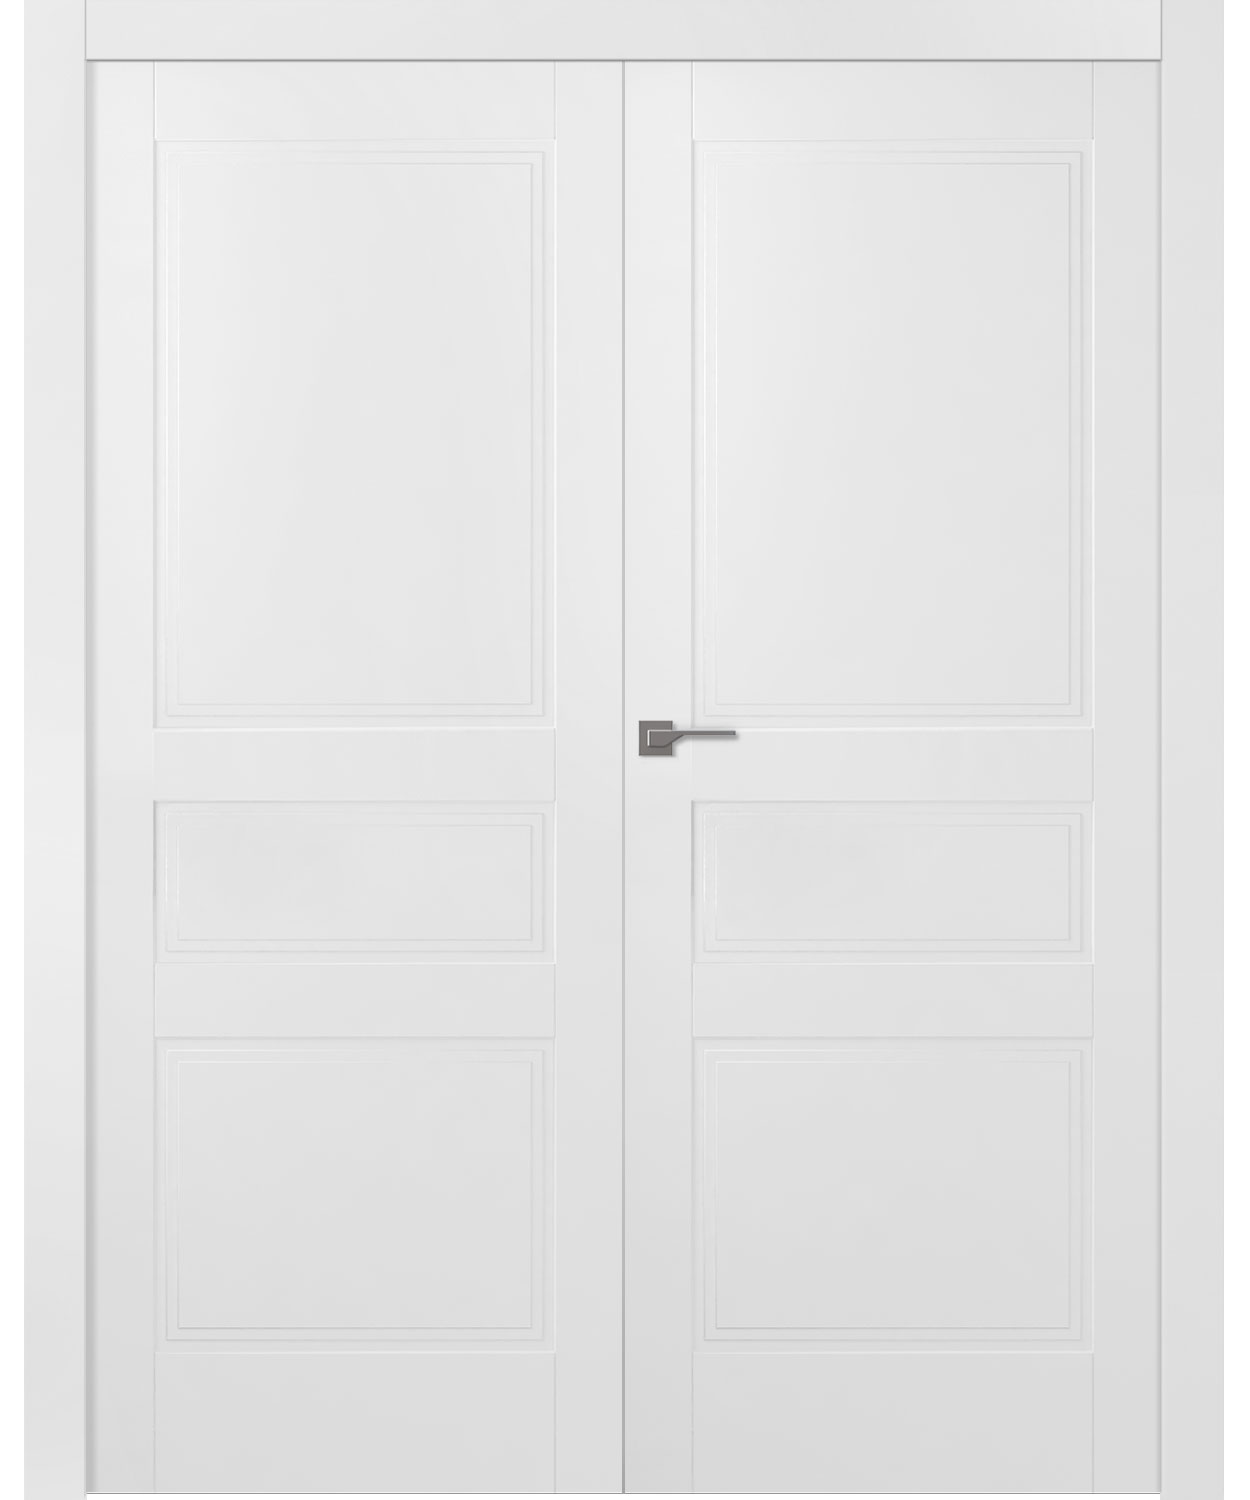 Дверное Полотно Пвдгщ "Инари" Эмаль Белый 2,0-0,7 Распашная двойная